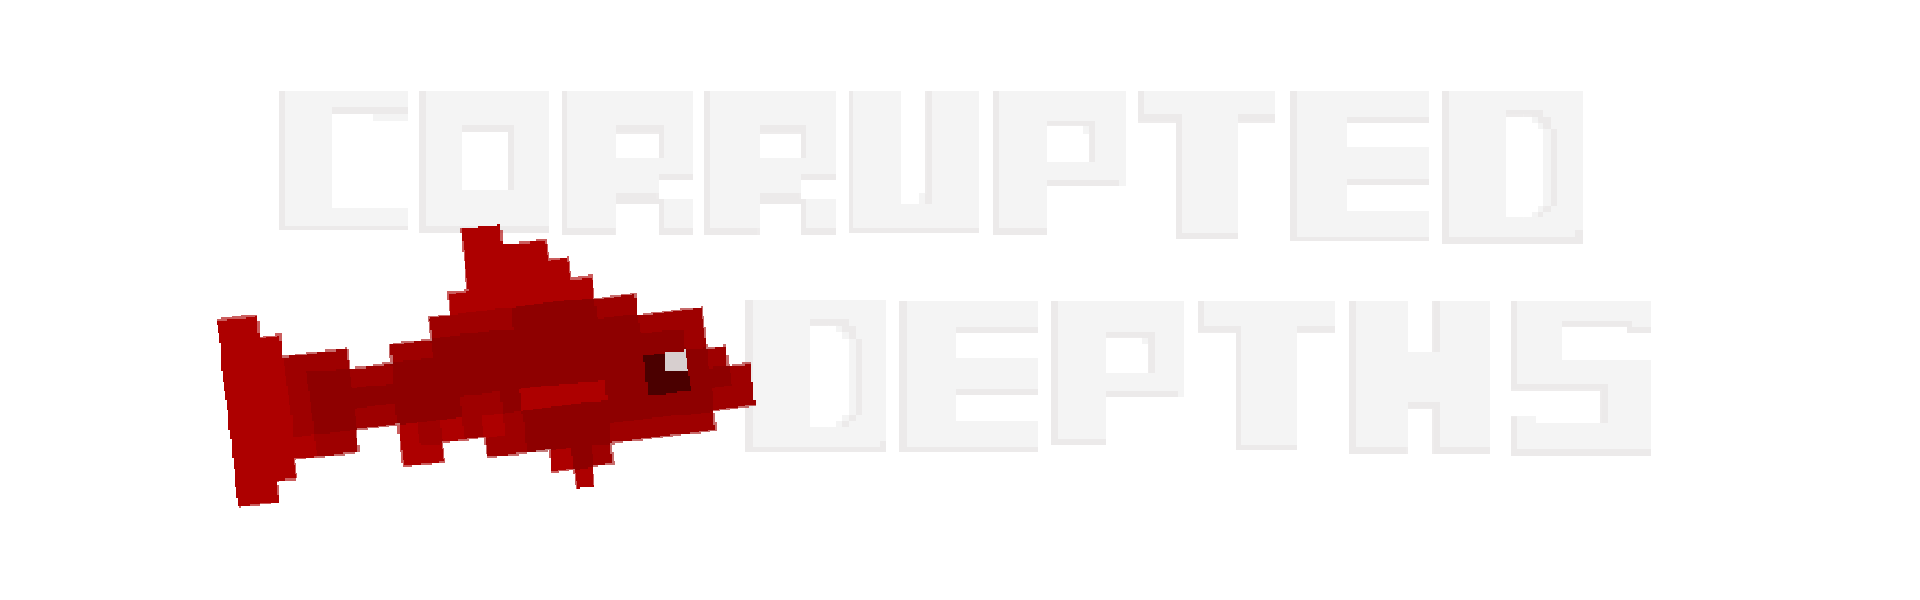 Corrupted Depths